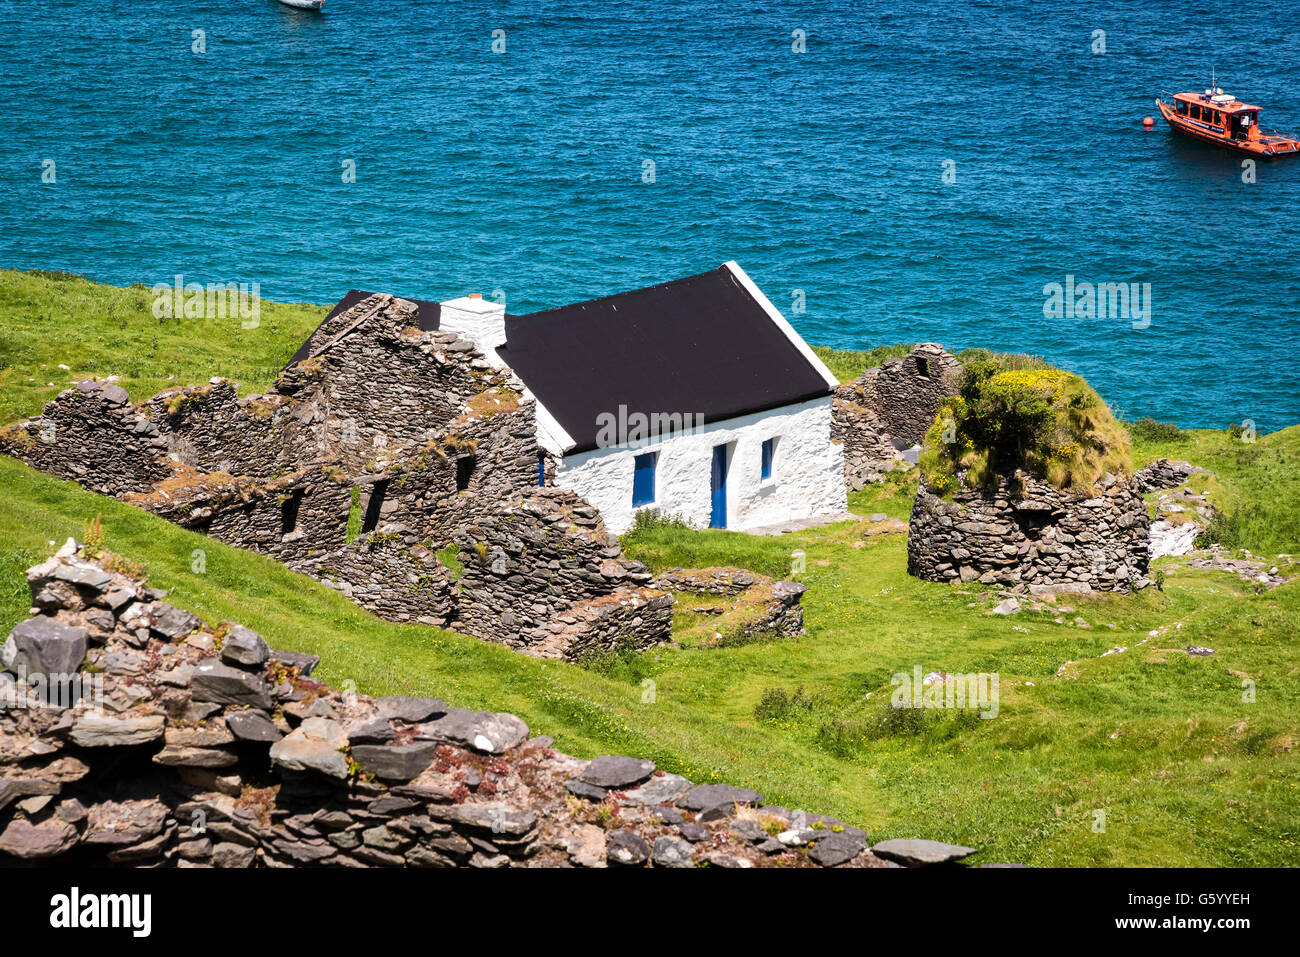 Les îles Blasket, Kerry, Irlande,façon sauvage de l'Atlantique Banque D'Images